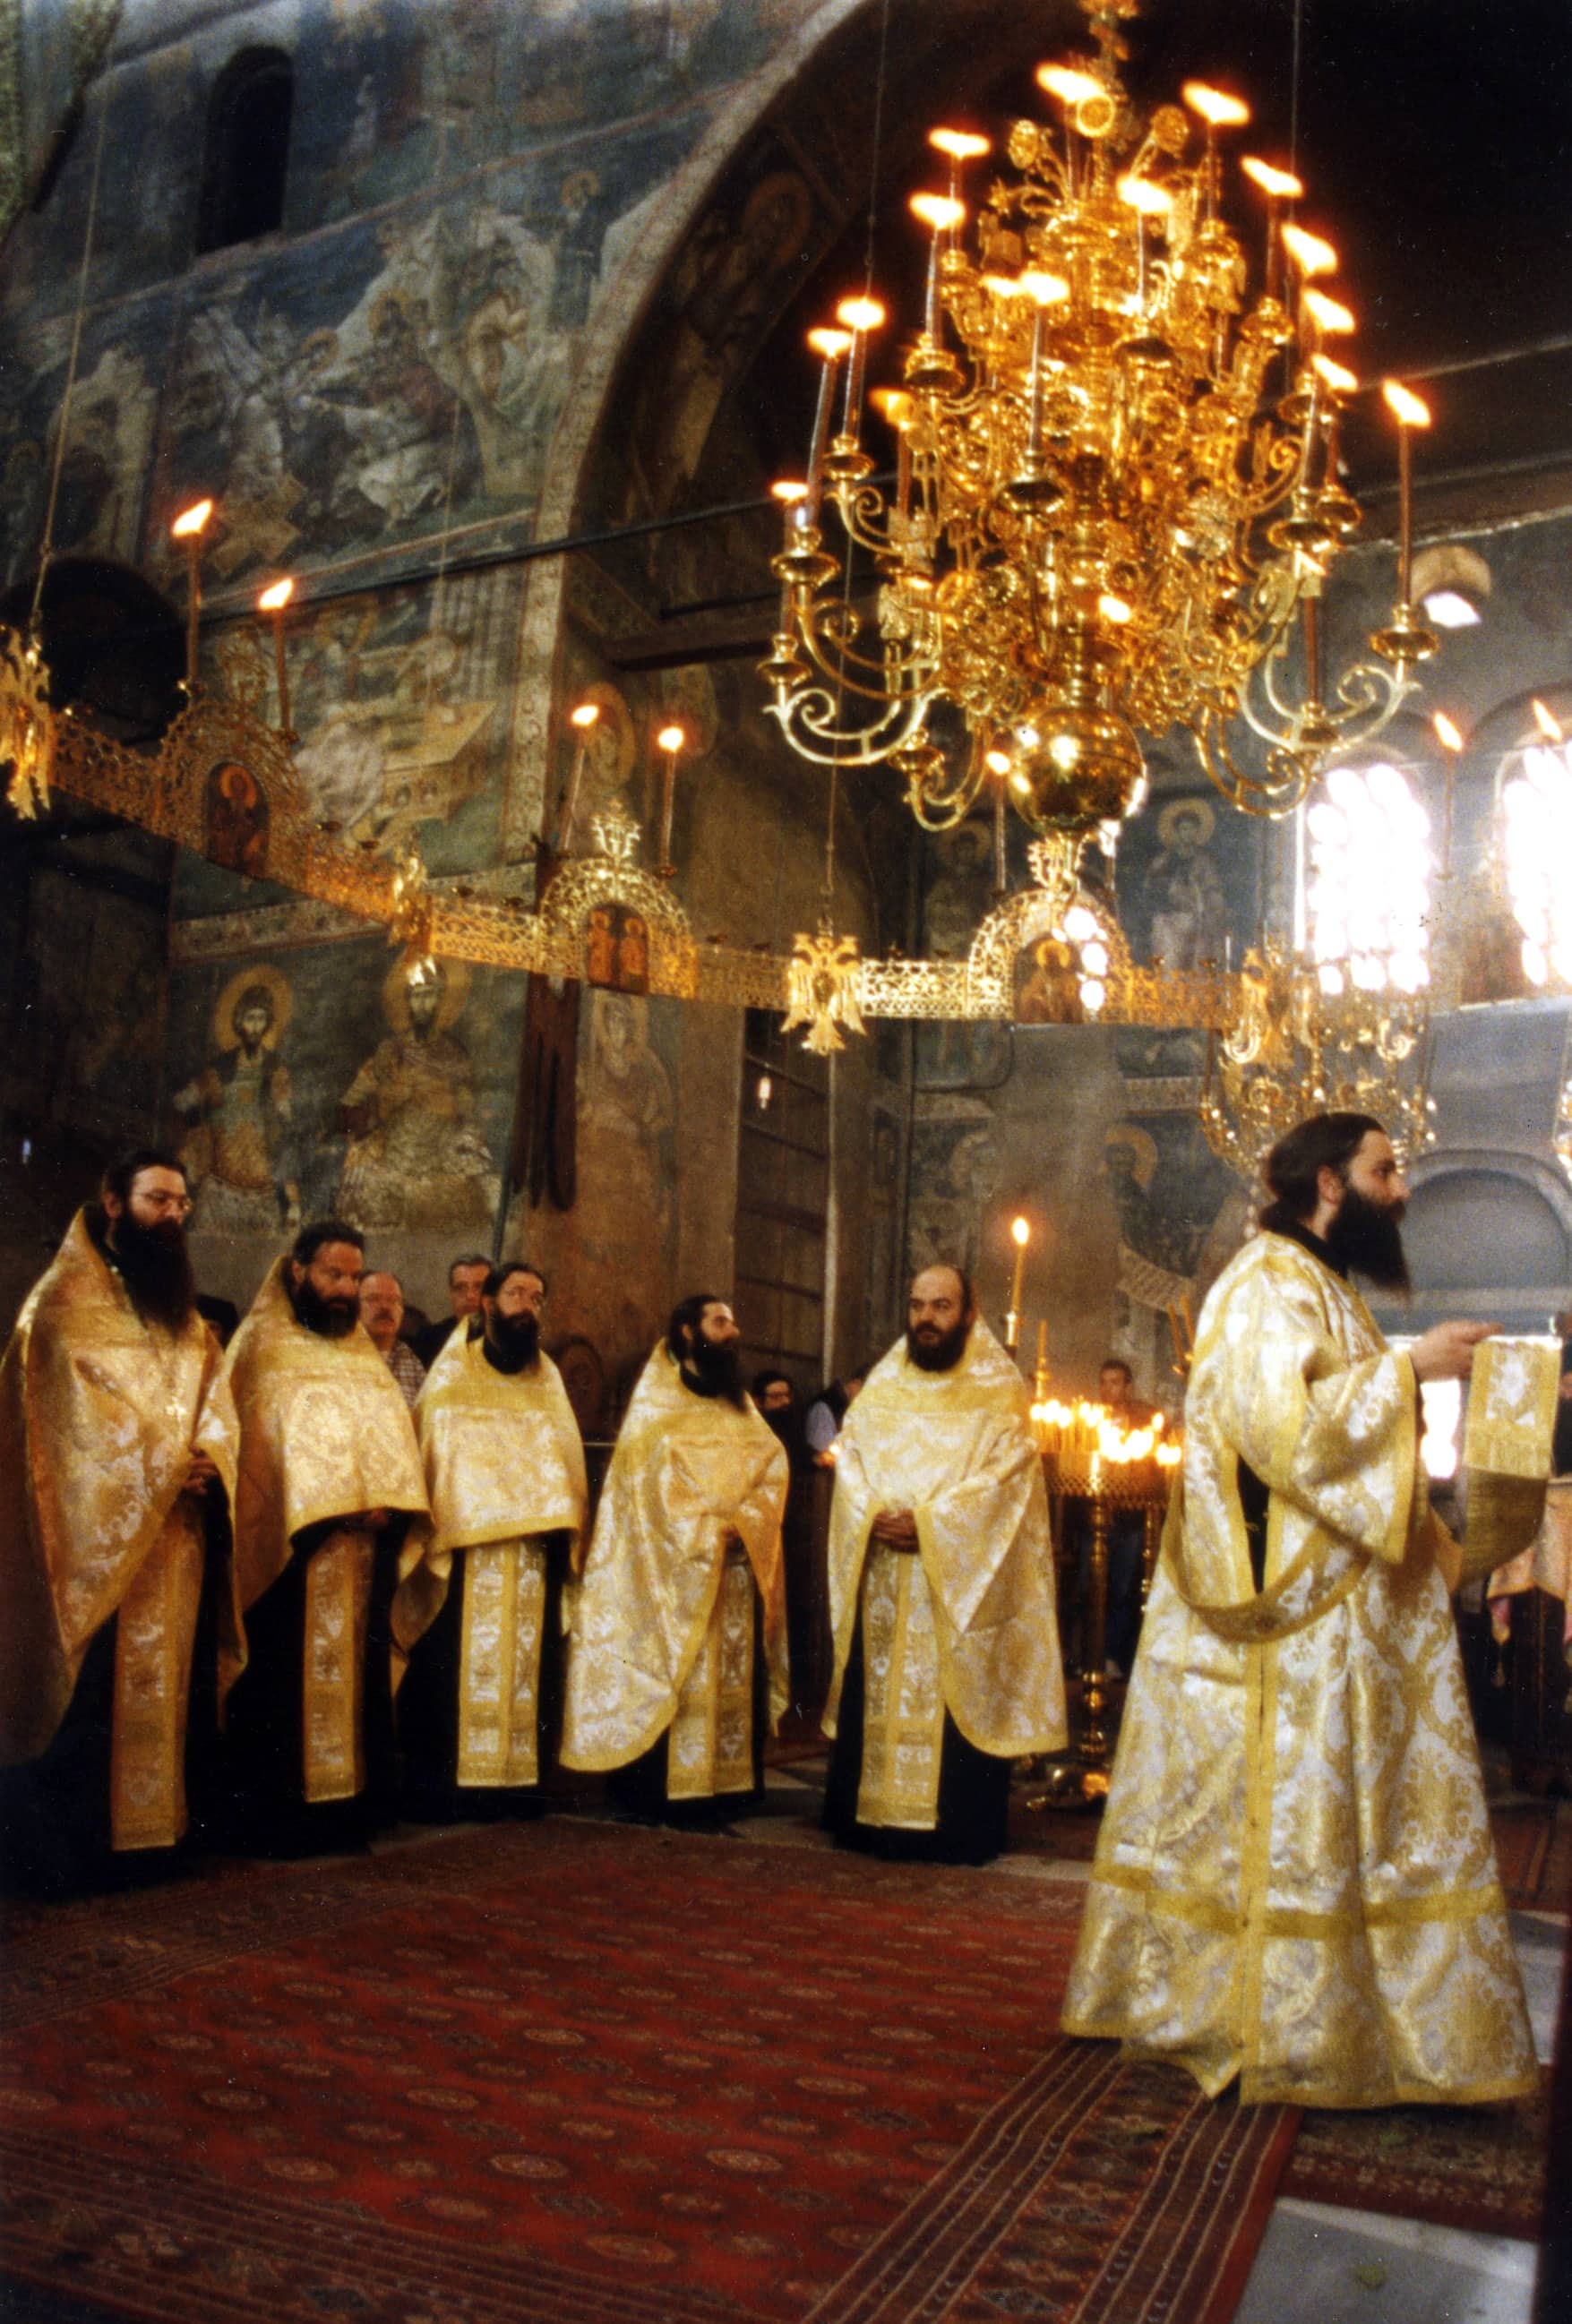 Più cristiani tra i migranti: in Italia gli ortodossi sorpassano i musulmani